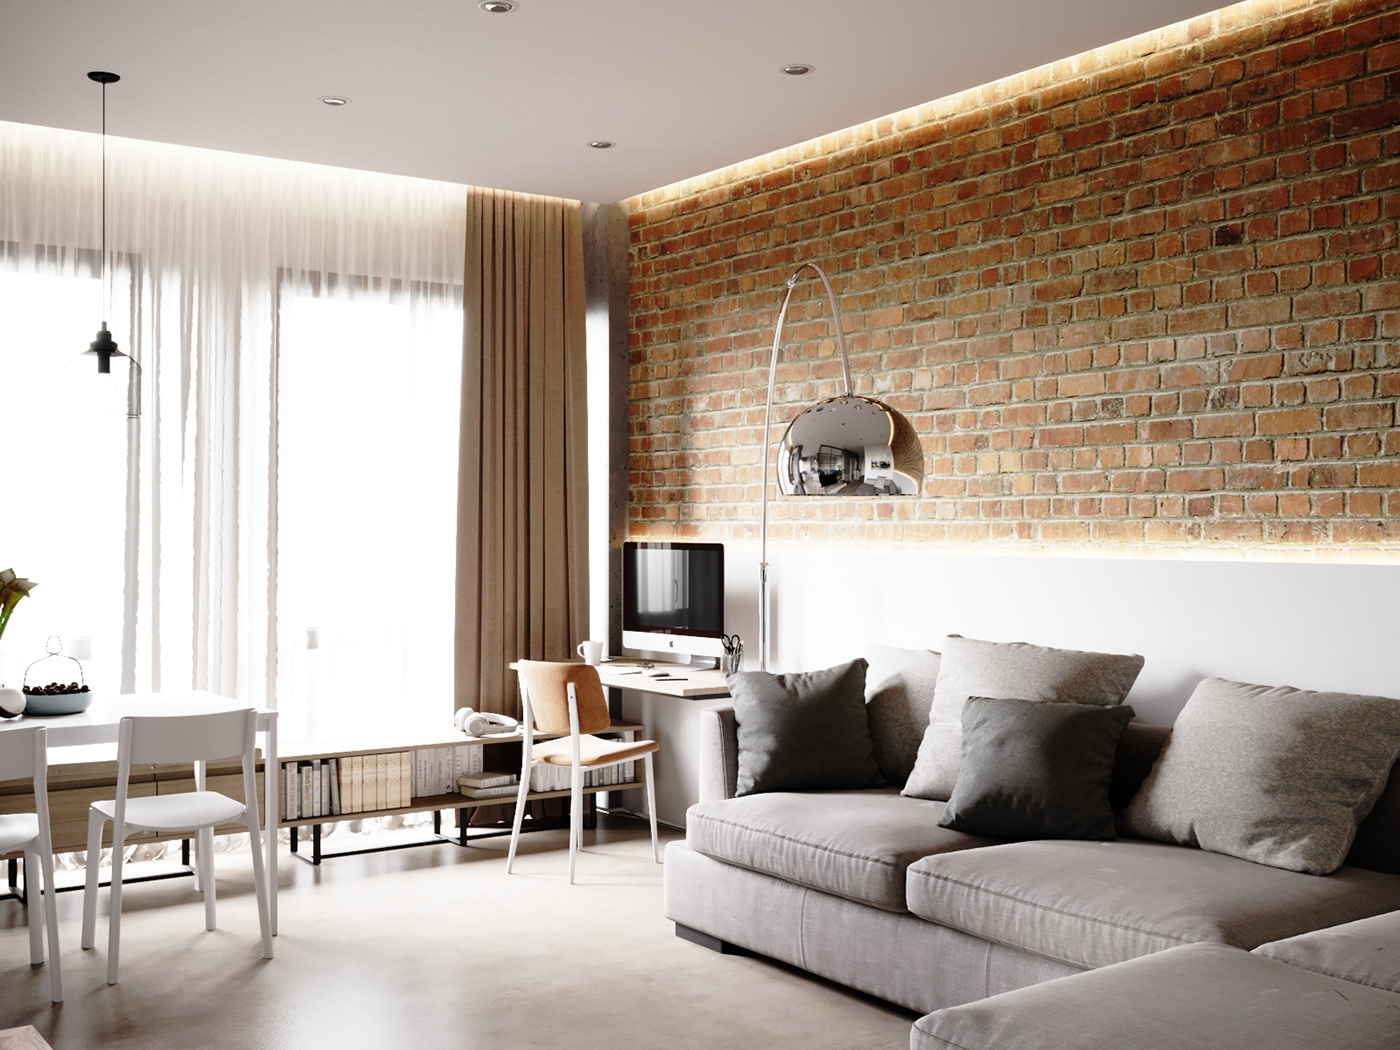 LOFT Interior loft apartment Minimalism interior white interior bricks